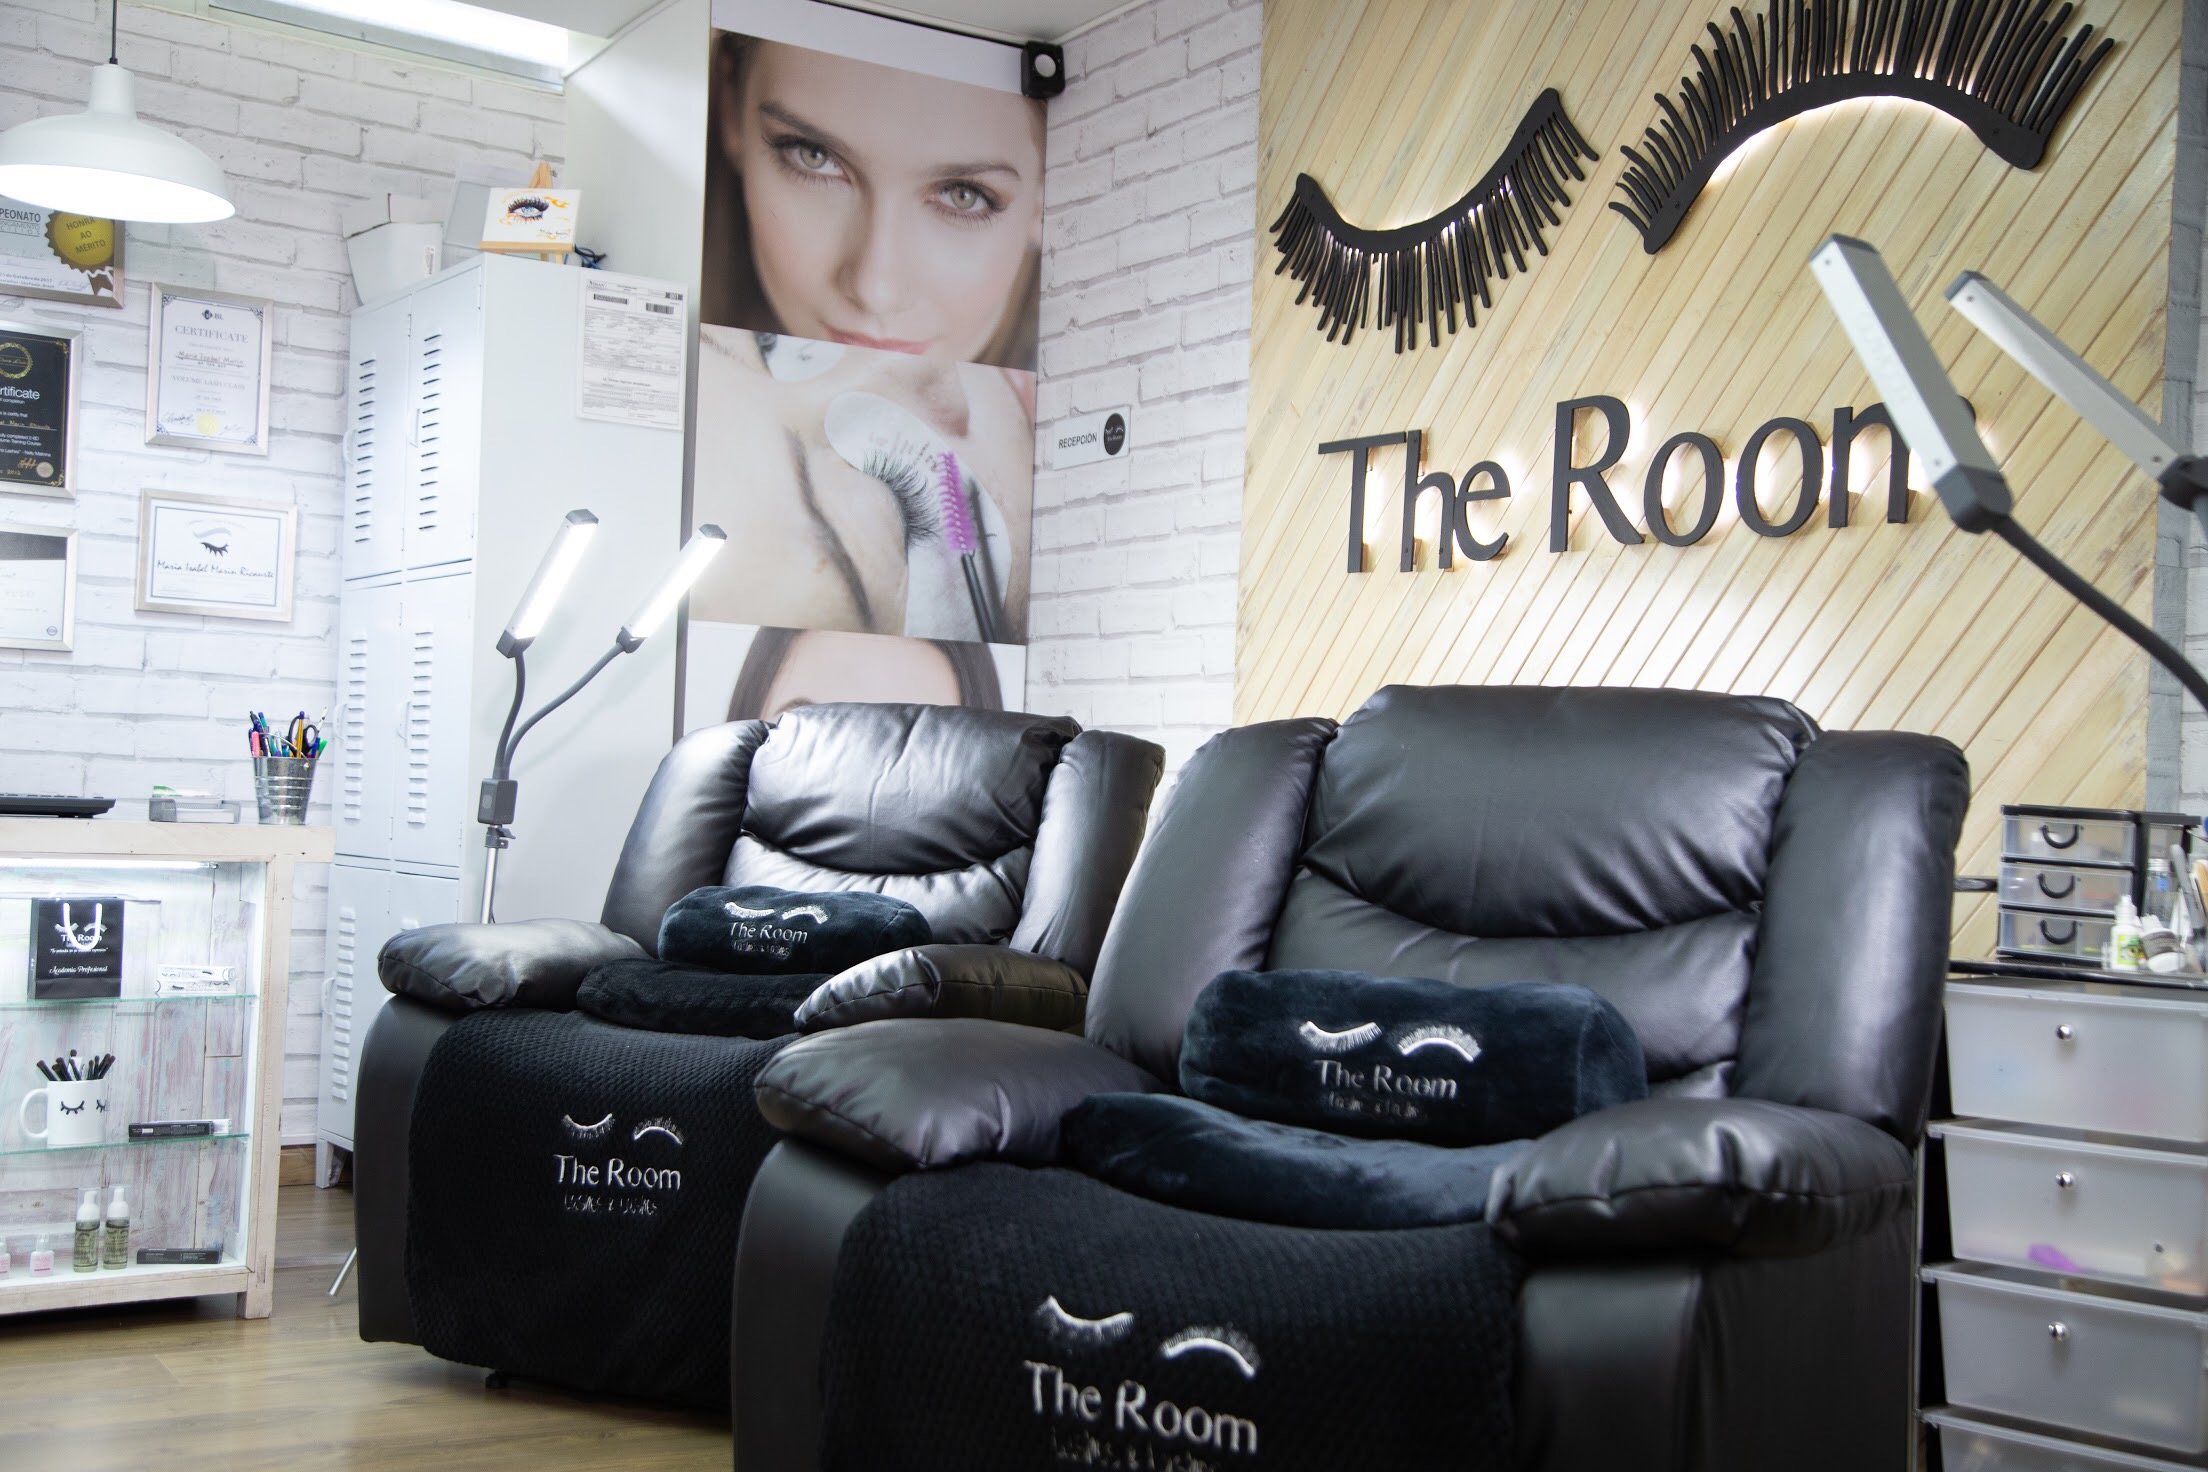 The Room Lashes & Lashes: estudio de pestañas líder en la industria de la belleza llegó a Miami